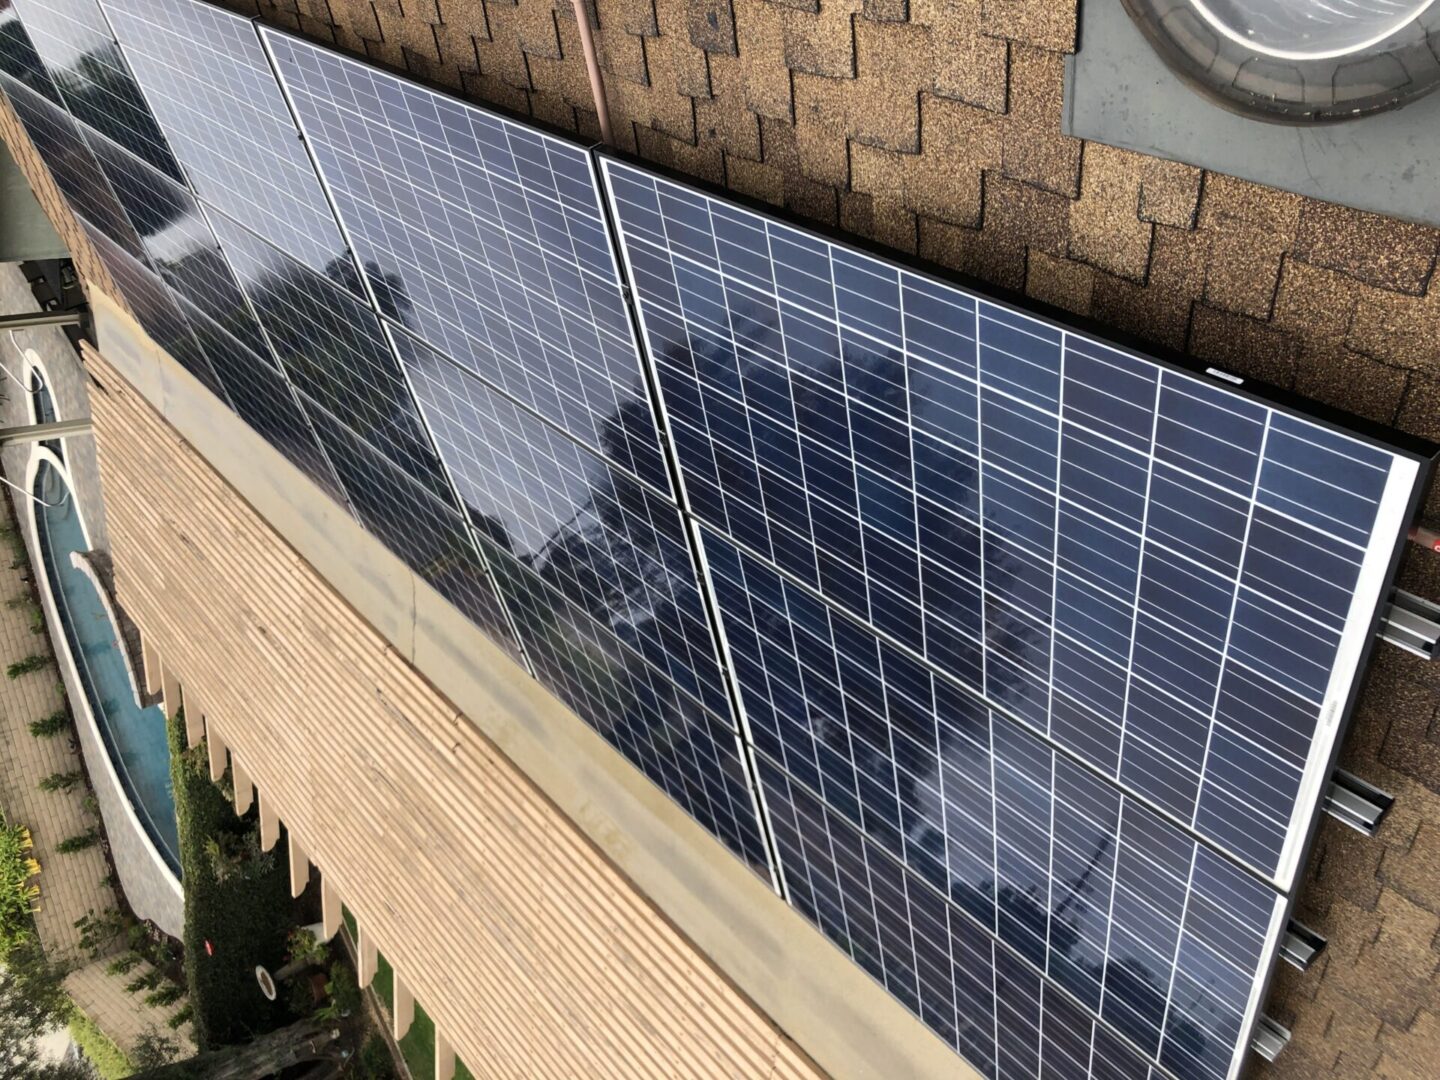 Shiny solar panels